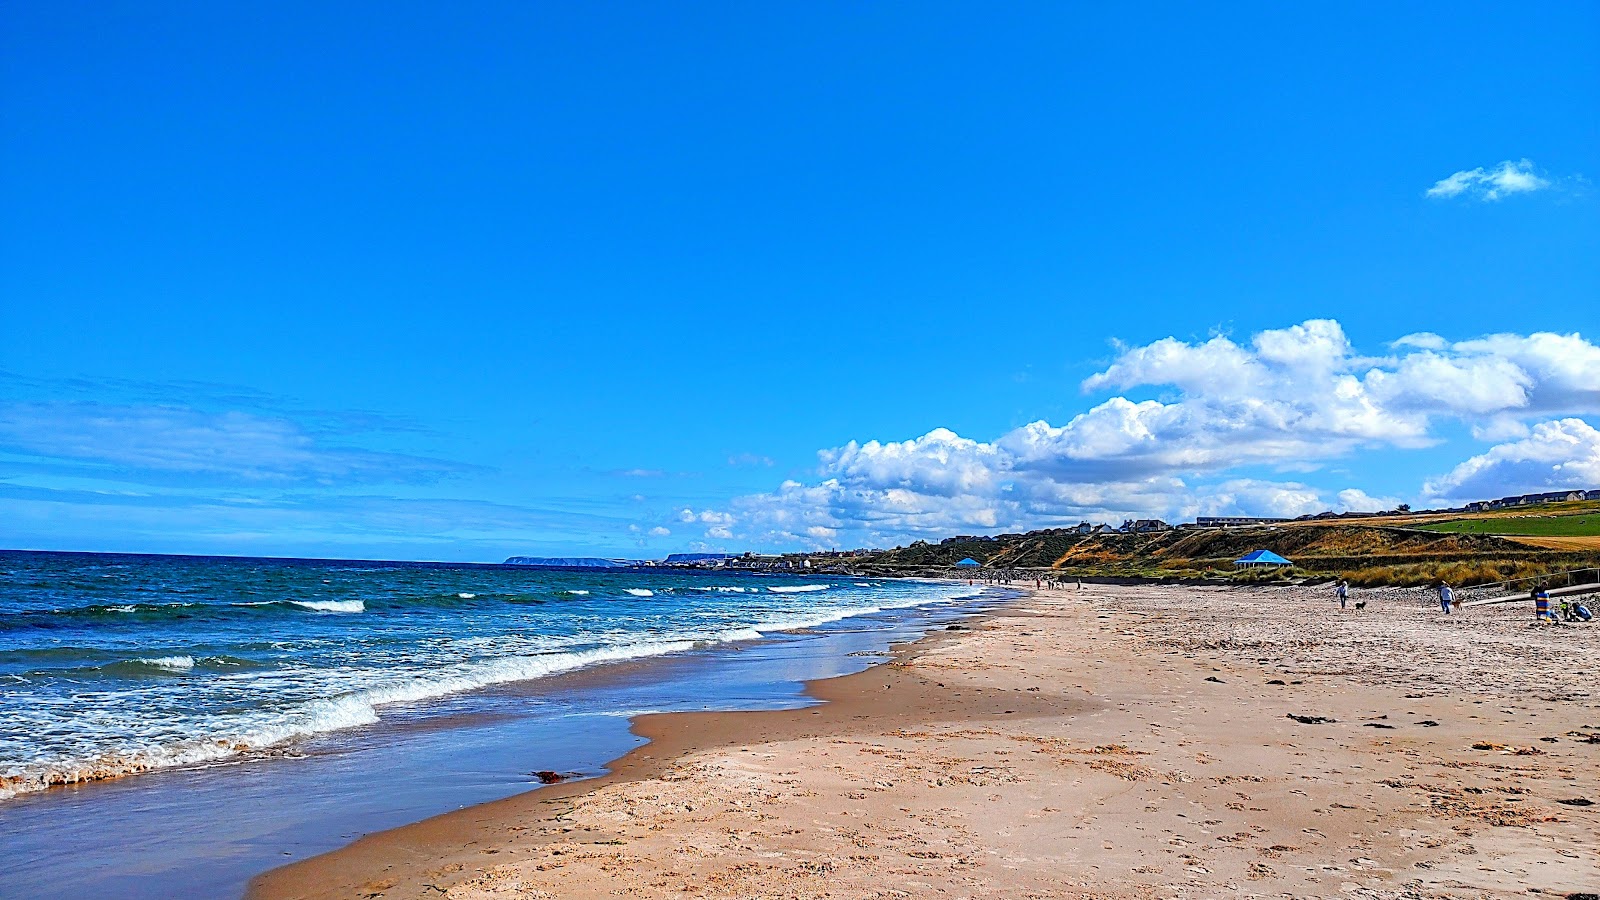 Foto de Boyndie Bay Beach - lugar popular entre los conocedores del relax